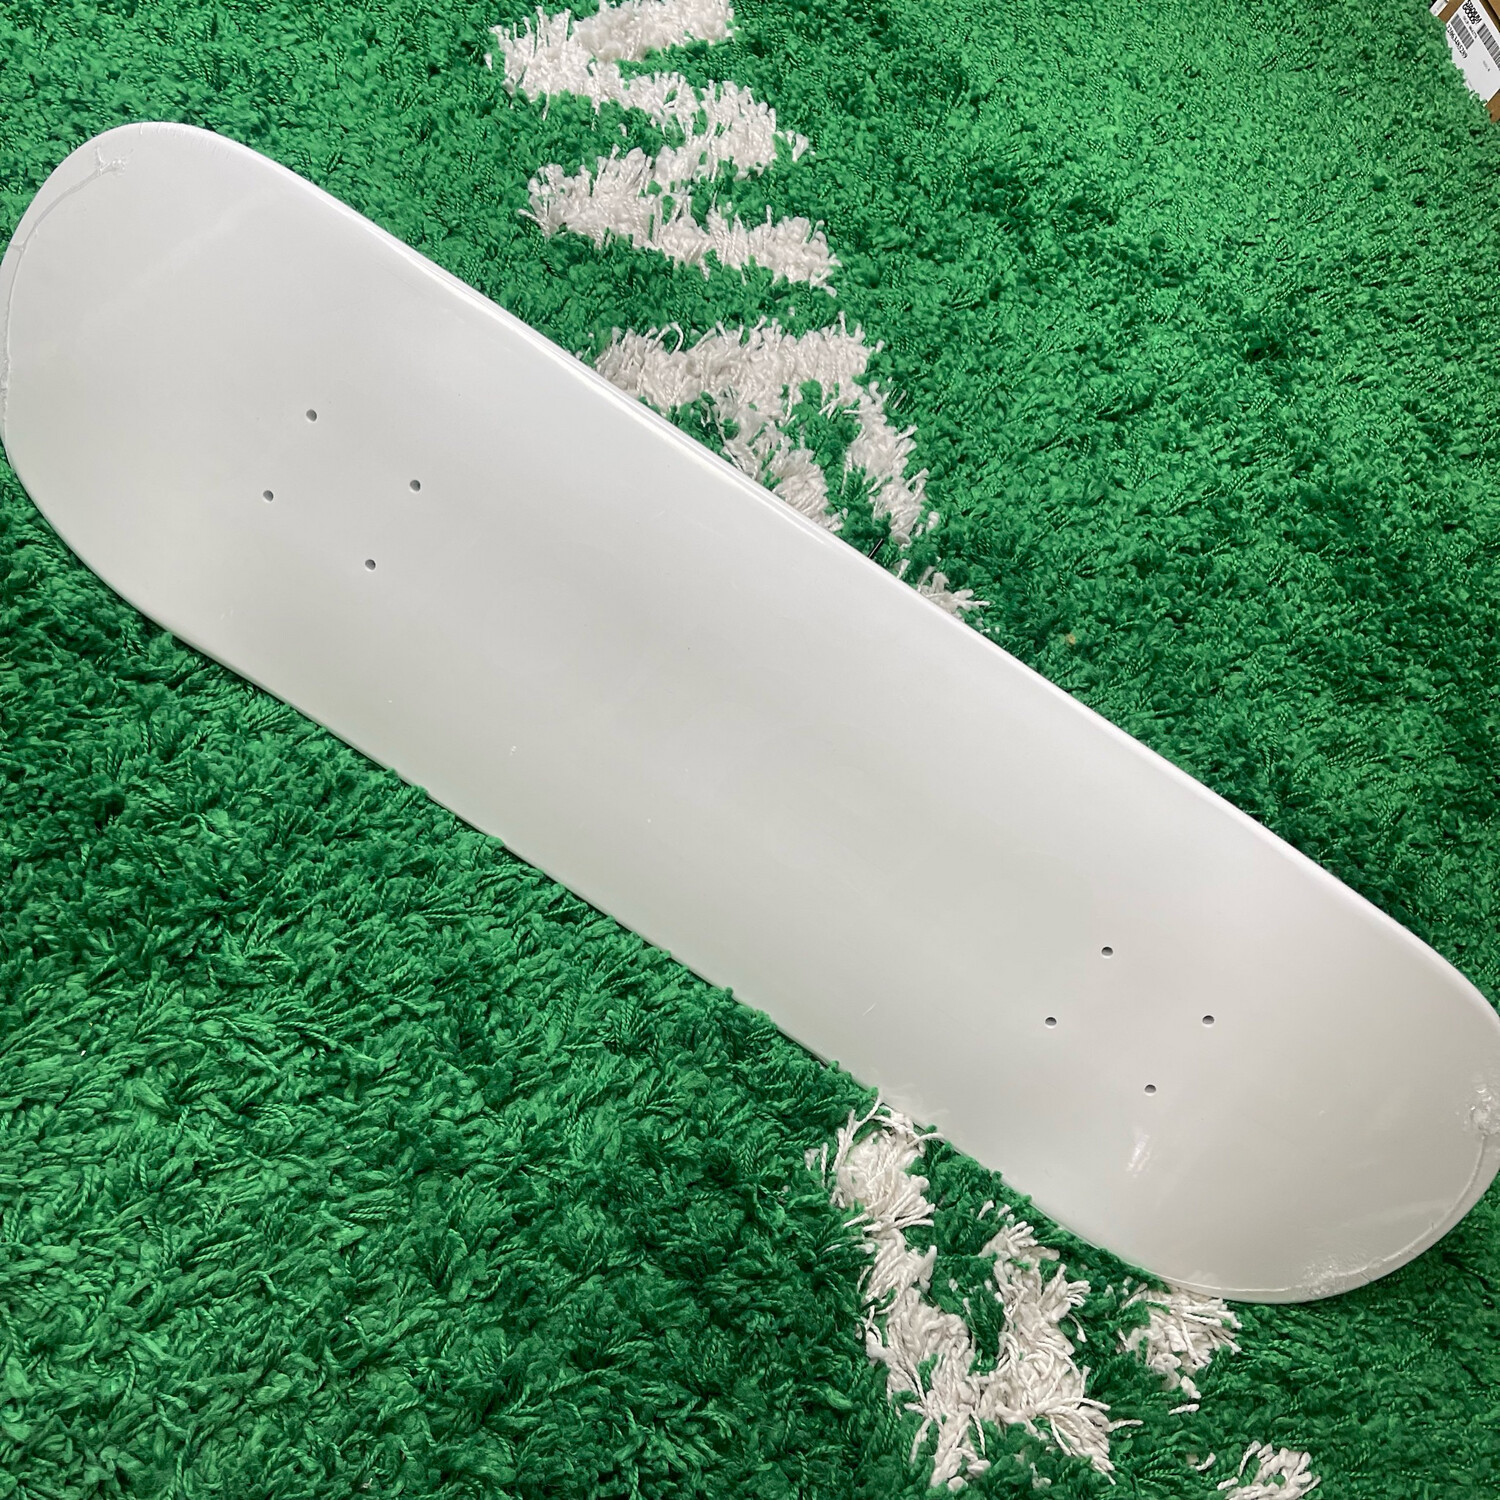 Supreme Tonal Box Logo Skateboard Deck White